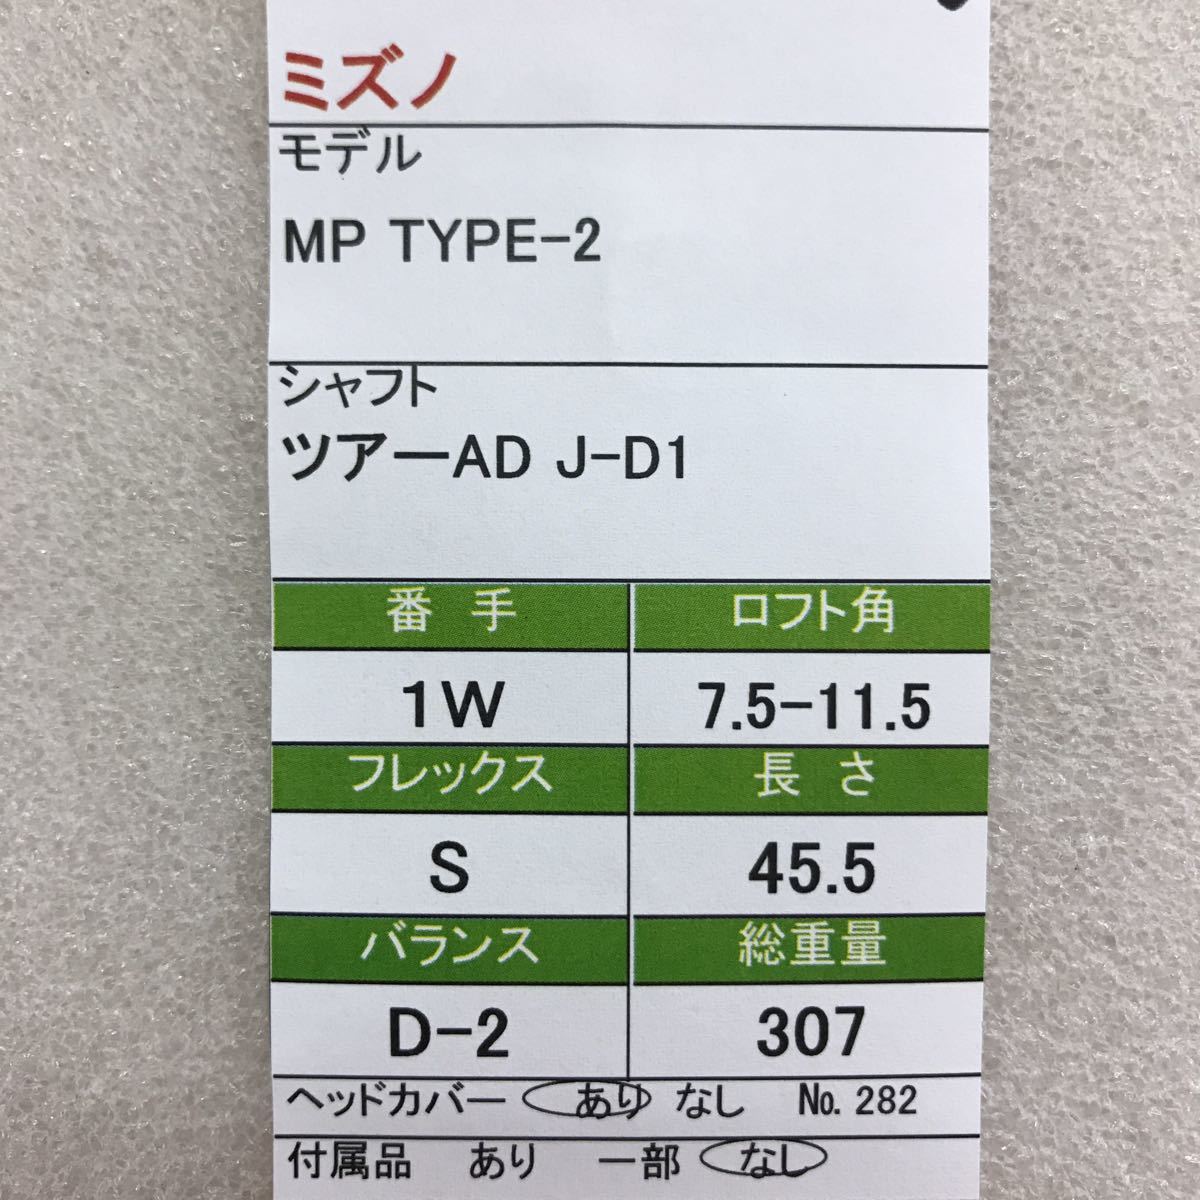 ☆0》《1W》《即決価格》ミズノ・MP TYPE-2・7.5-11.5度・ツアーAD J